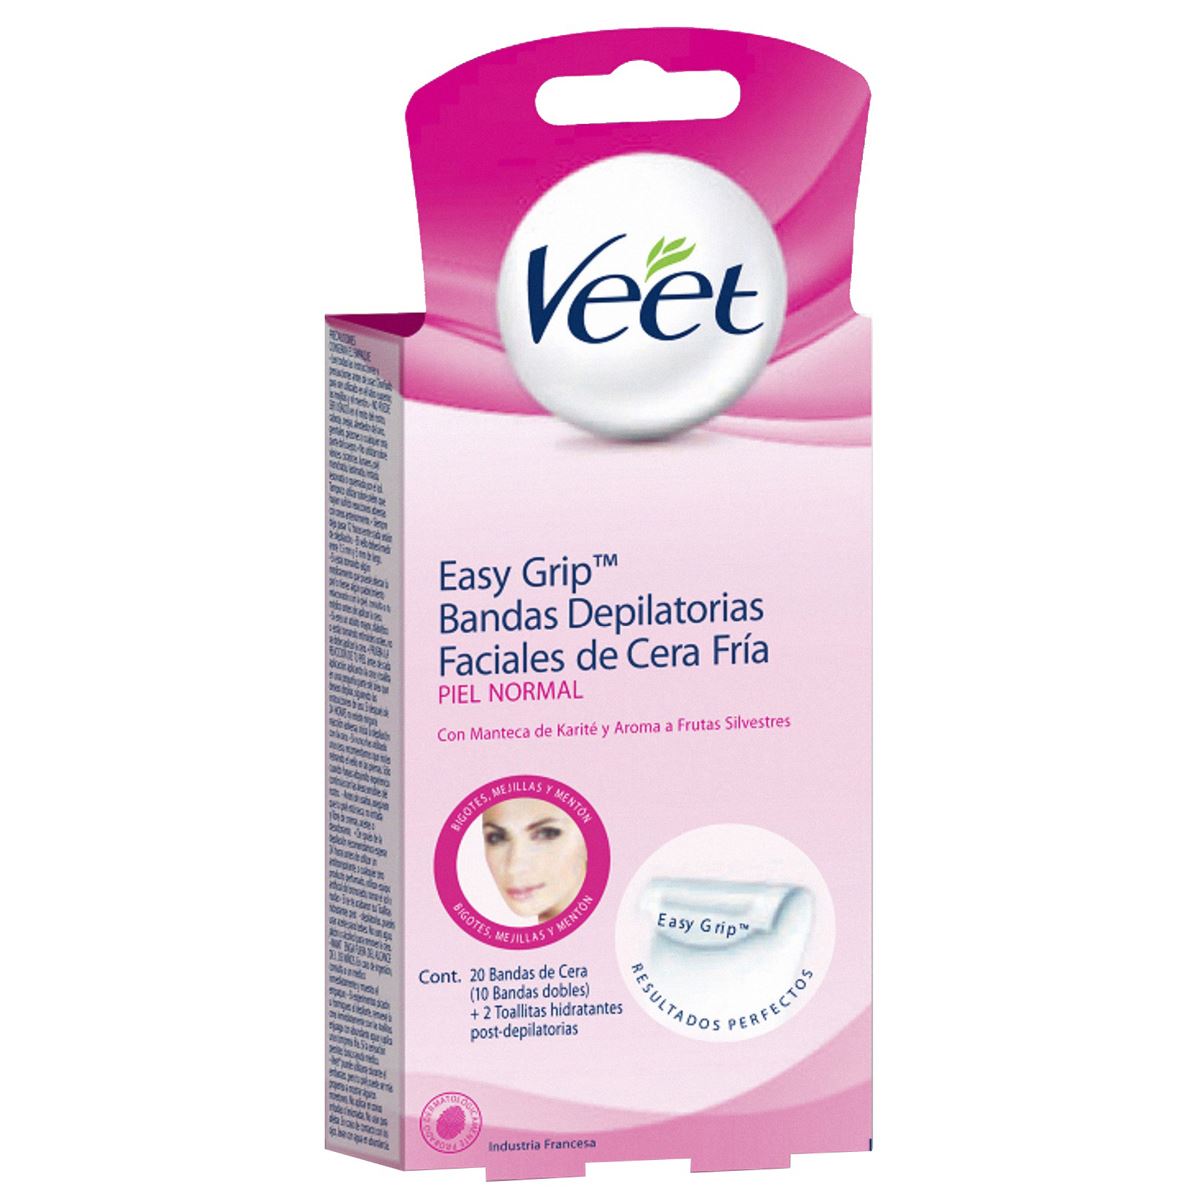 Veet® Easy Grip™ Bandas Depilatorias Faciales de Cera Fria para Piel Normal con 20 Bandas de Cera